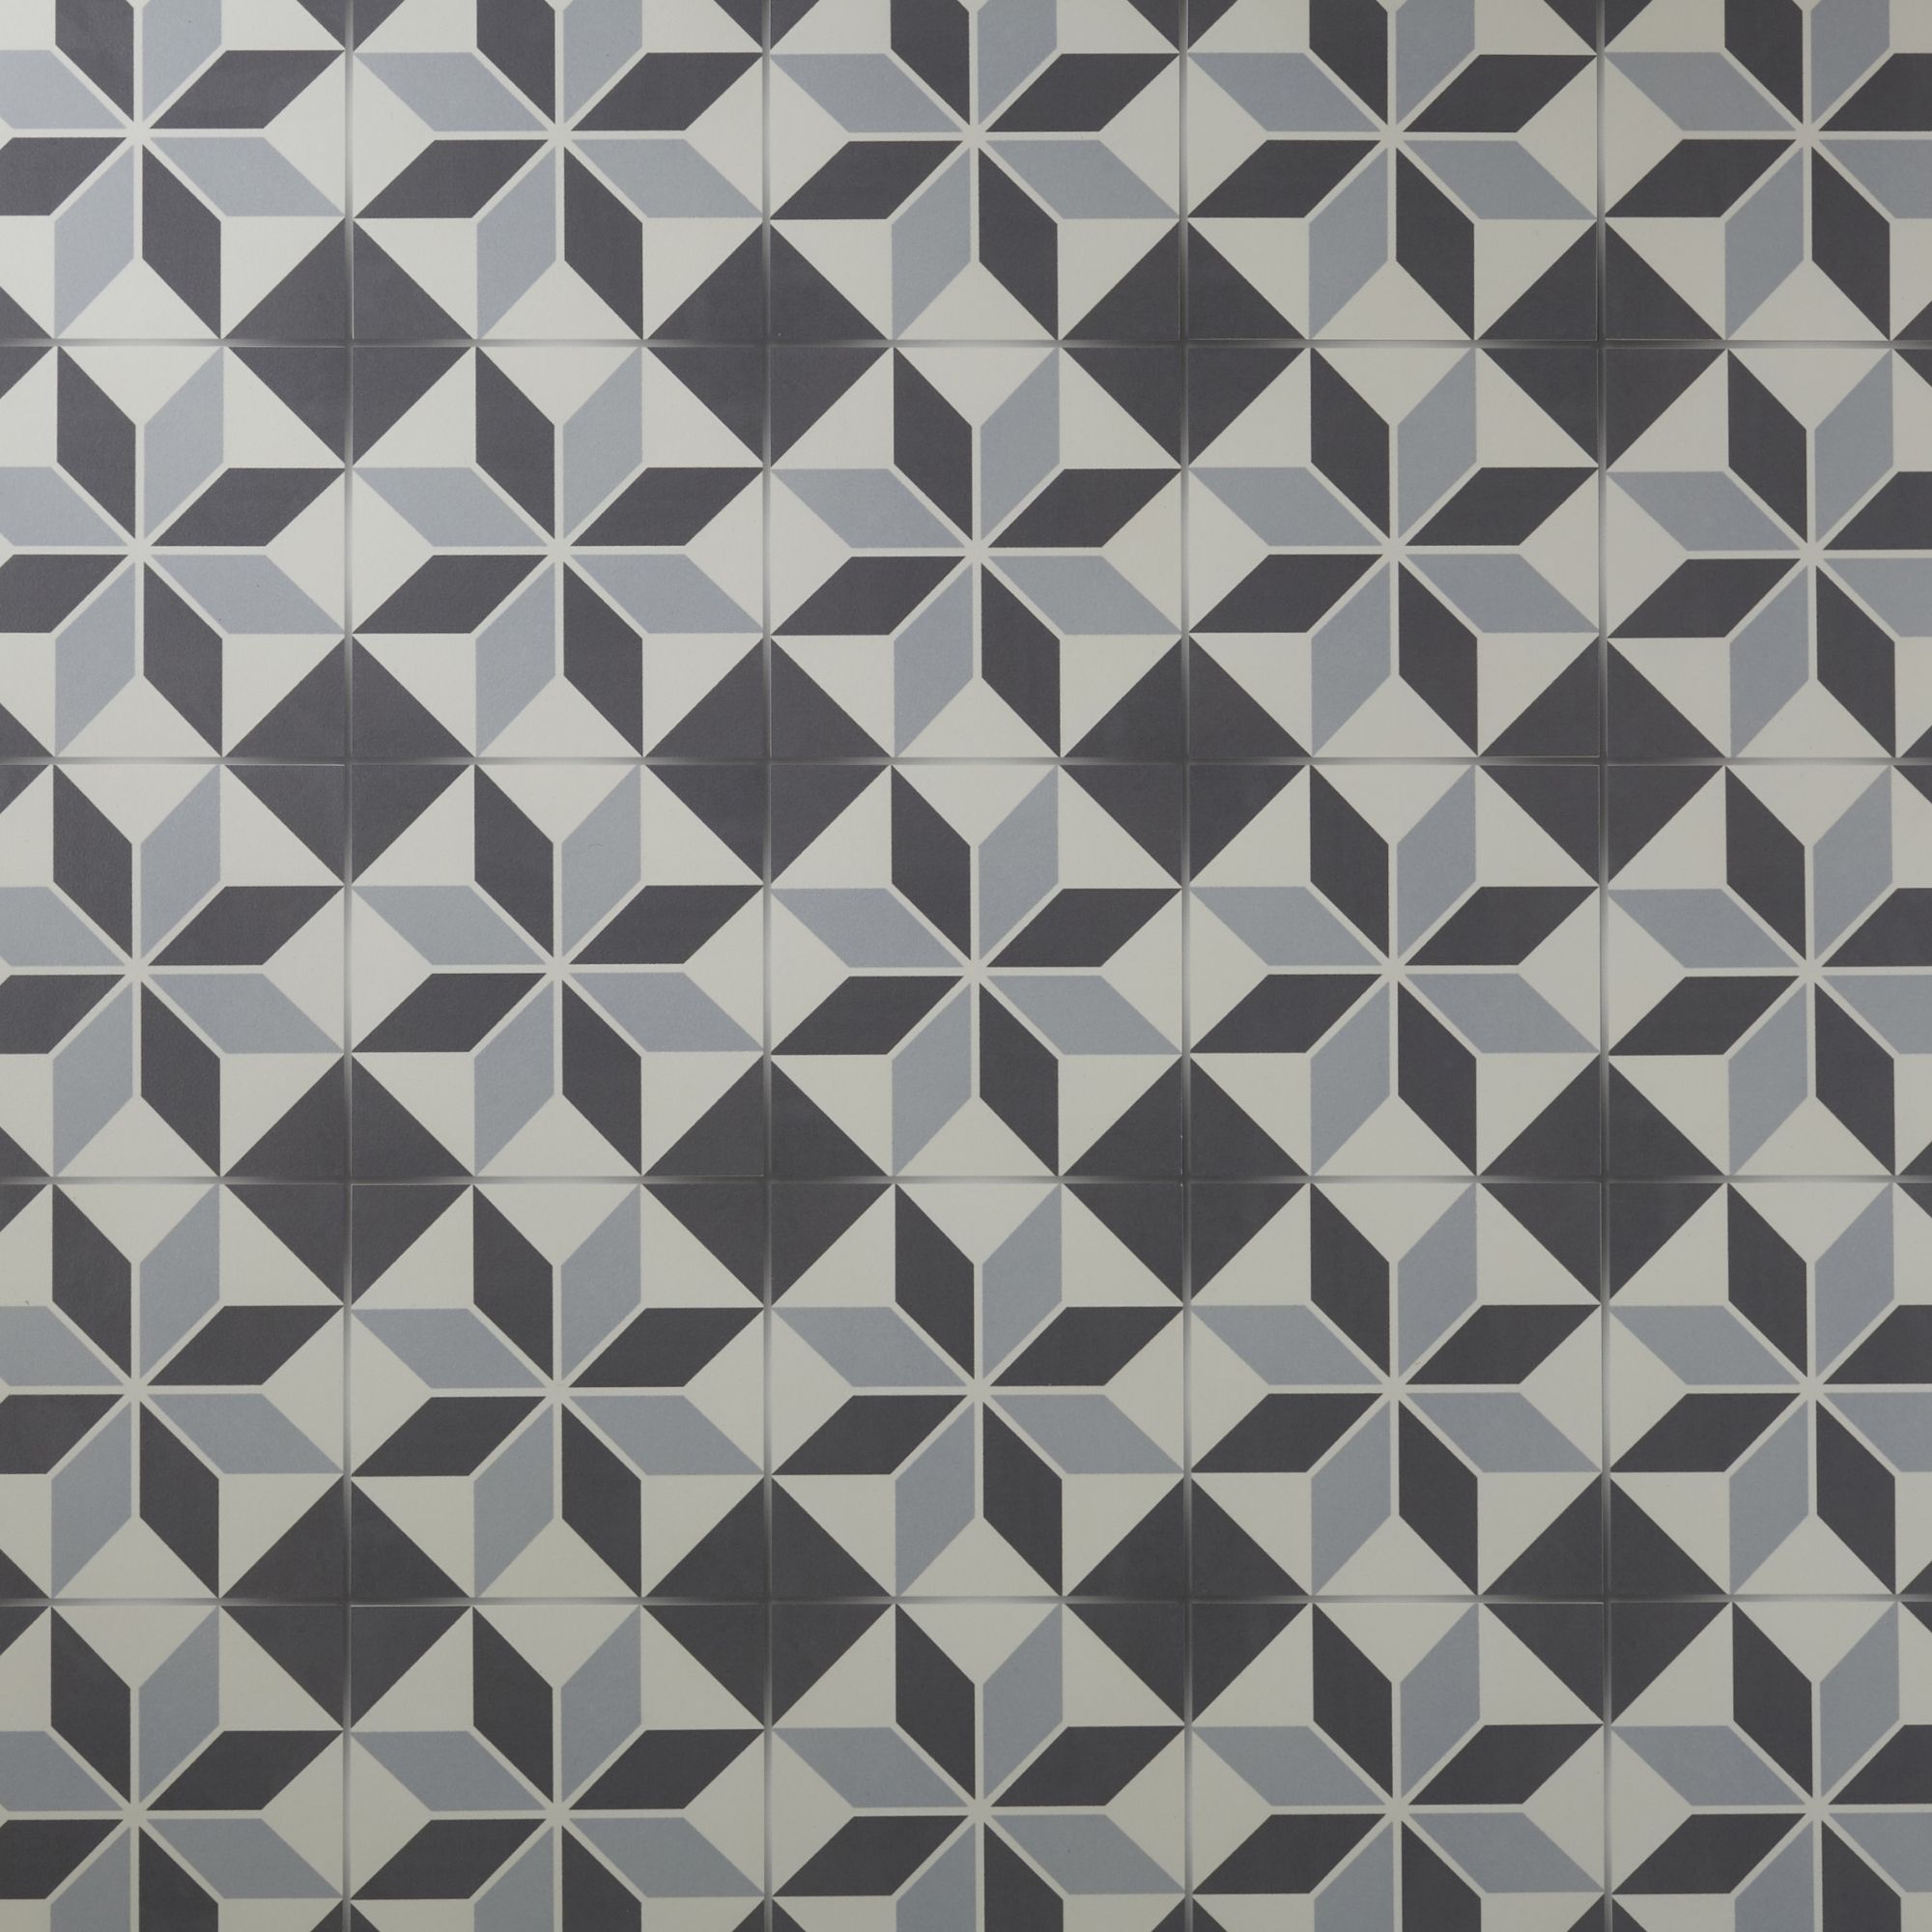 Colours Hydrolic Black & white Matt Star Porcelain Wall & floor Tile Sample